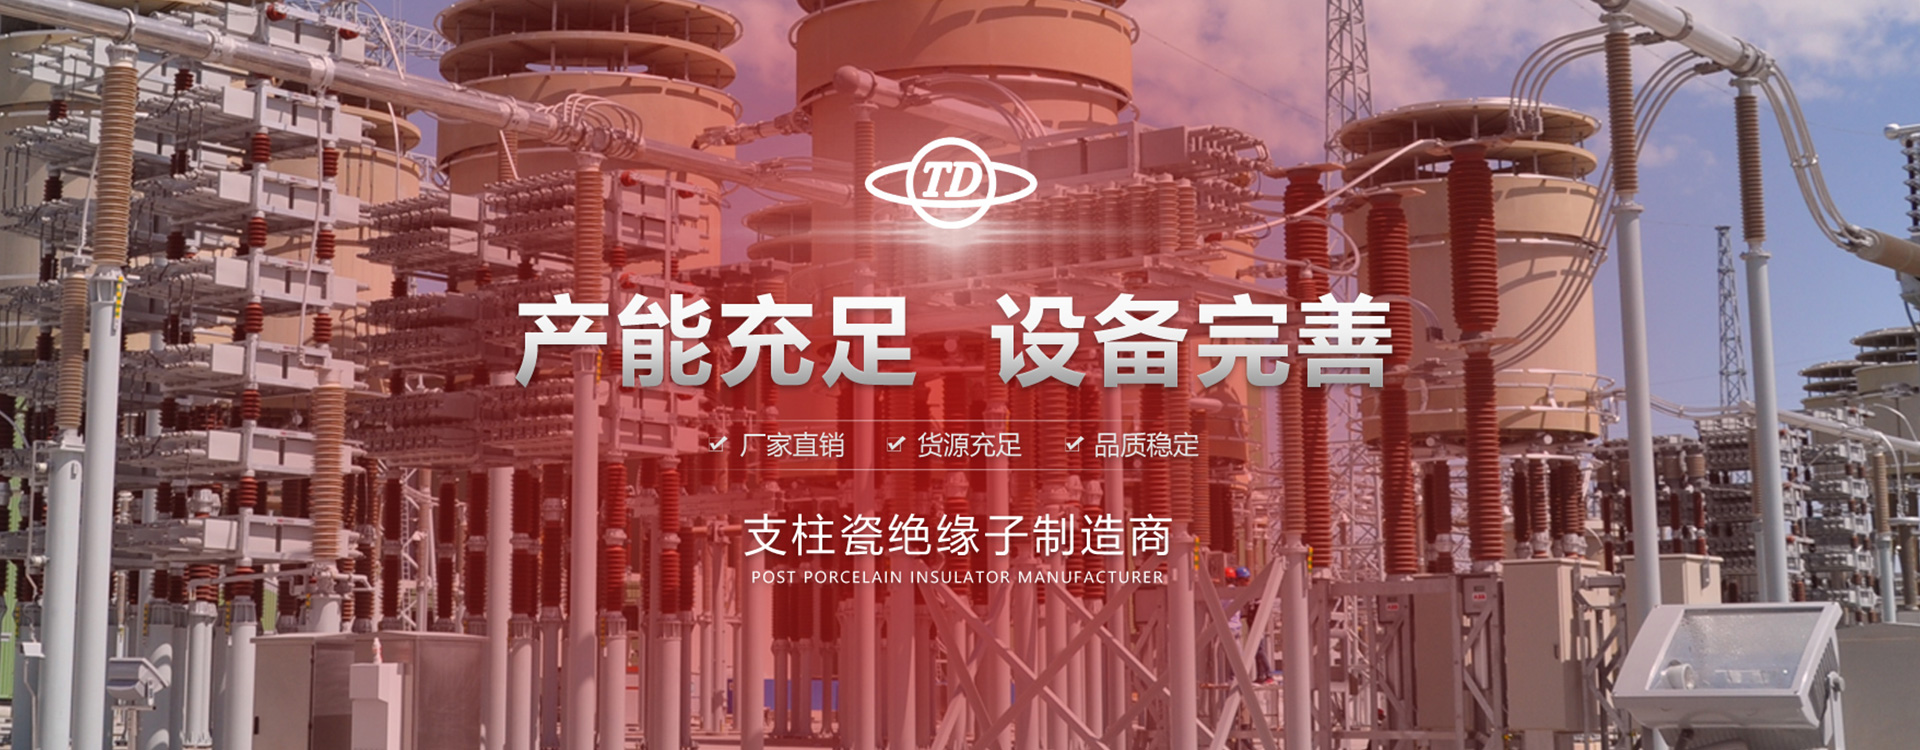 Tangshan High Voltage Porcelain Insulator Co., Ltd.